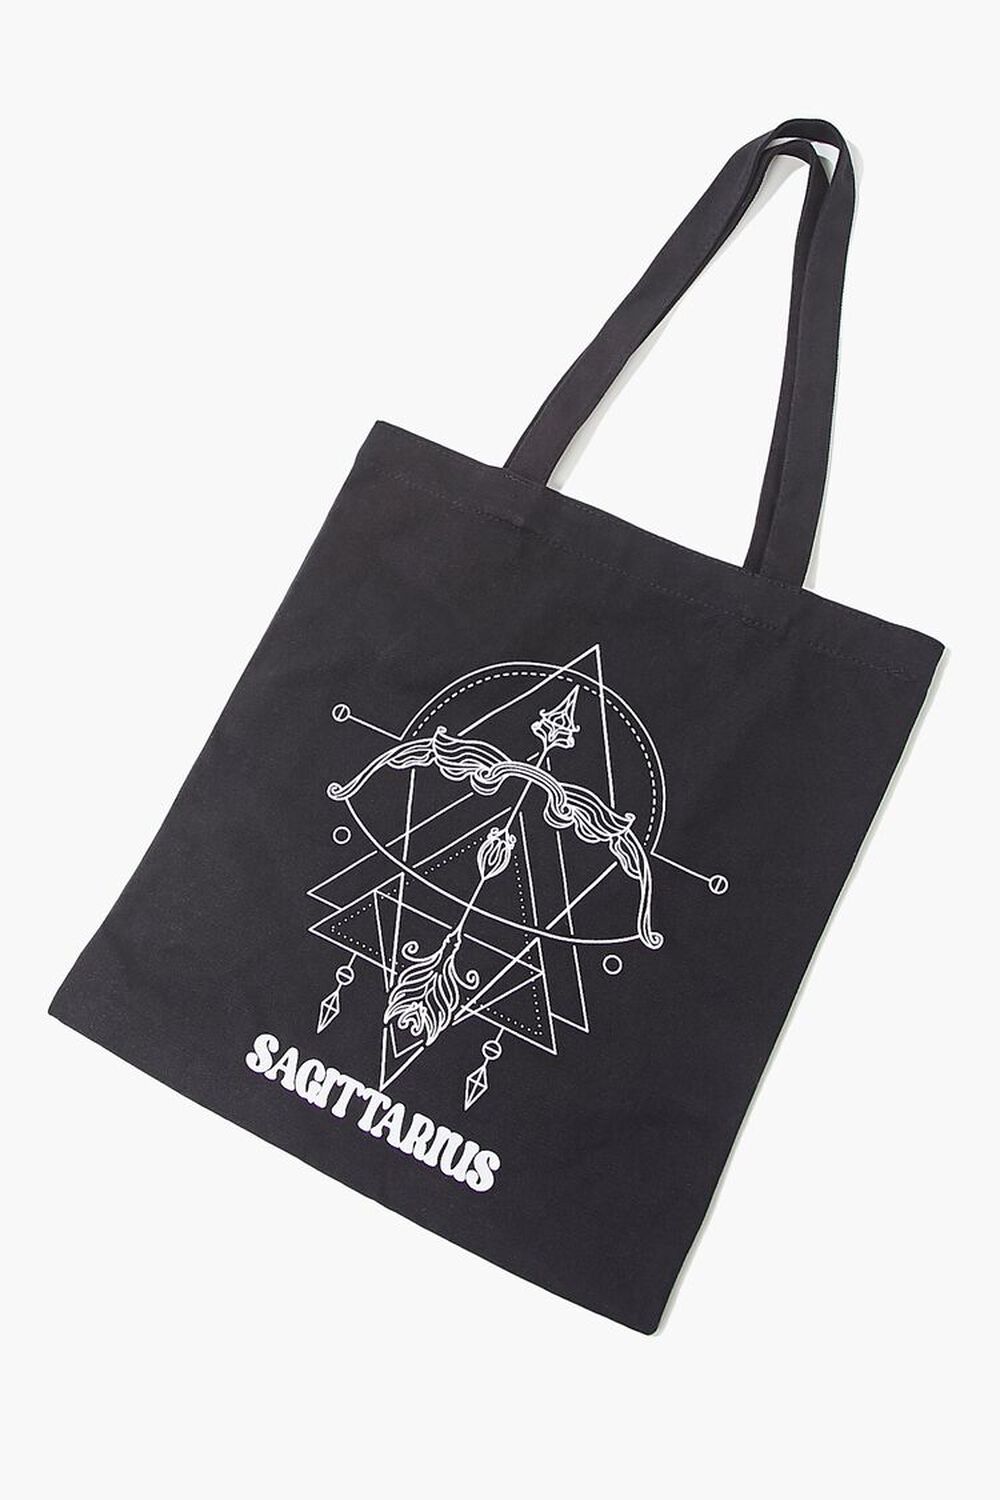 SAGITTARIUS/BLACK Zodiac Graphic Tote Bag, image 2